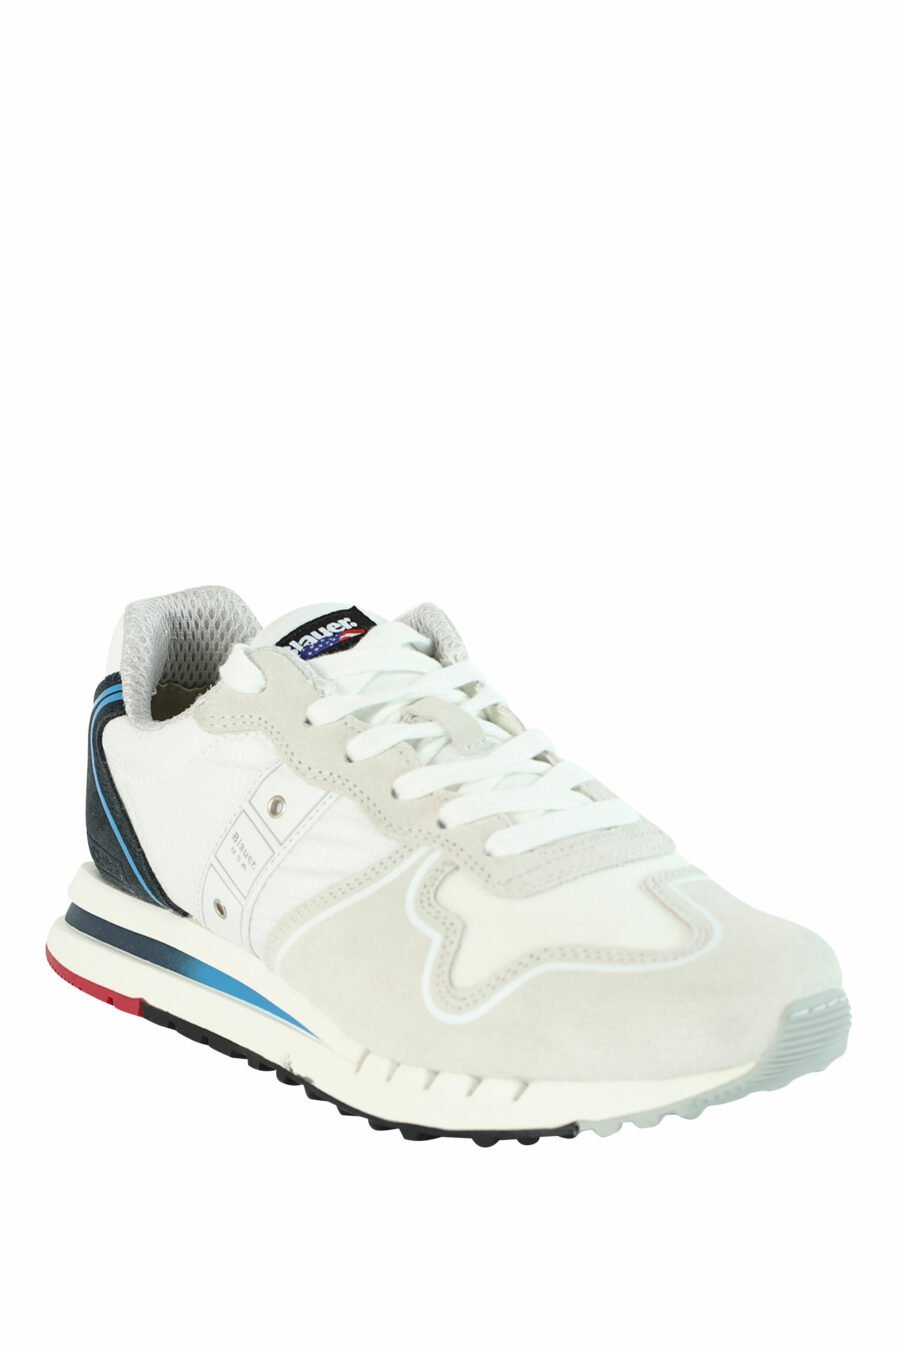 Zapatillas "QUARTZ" blancas con azul y detalles rojos - 8058156499522 2